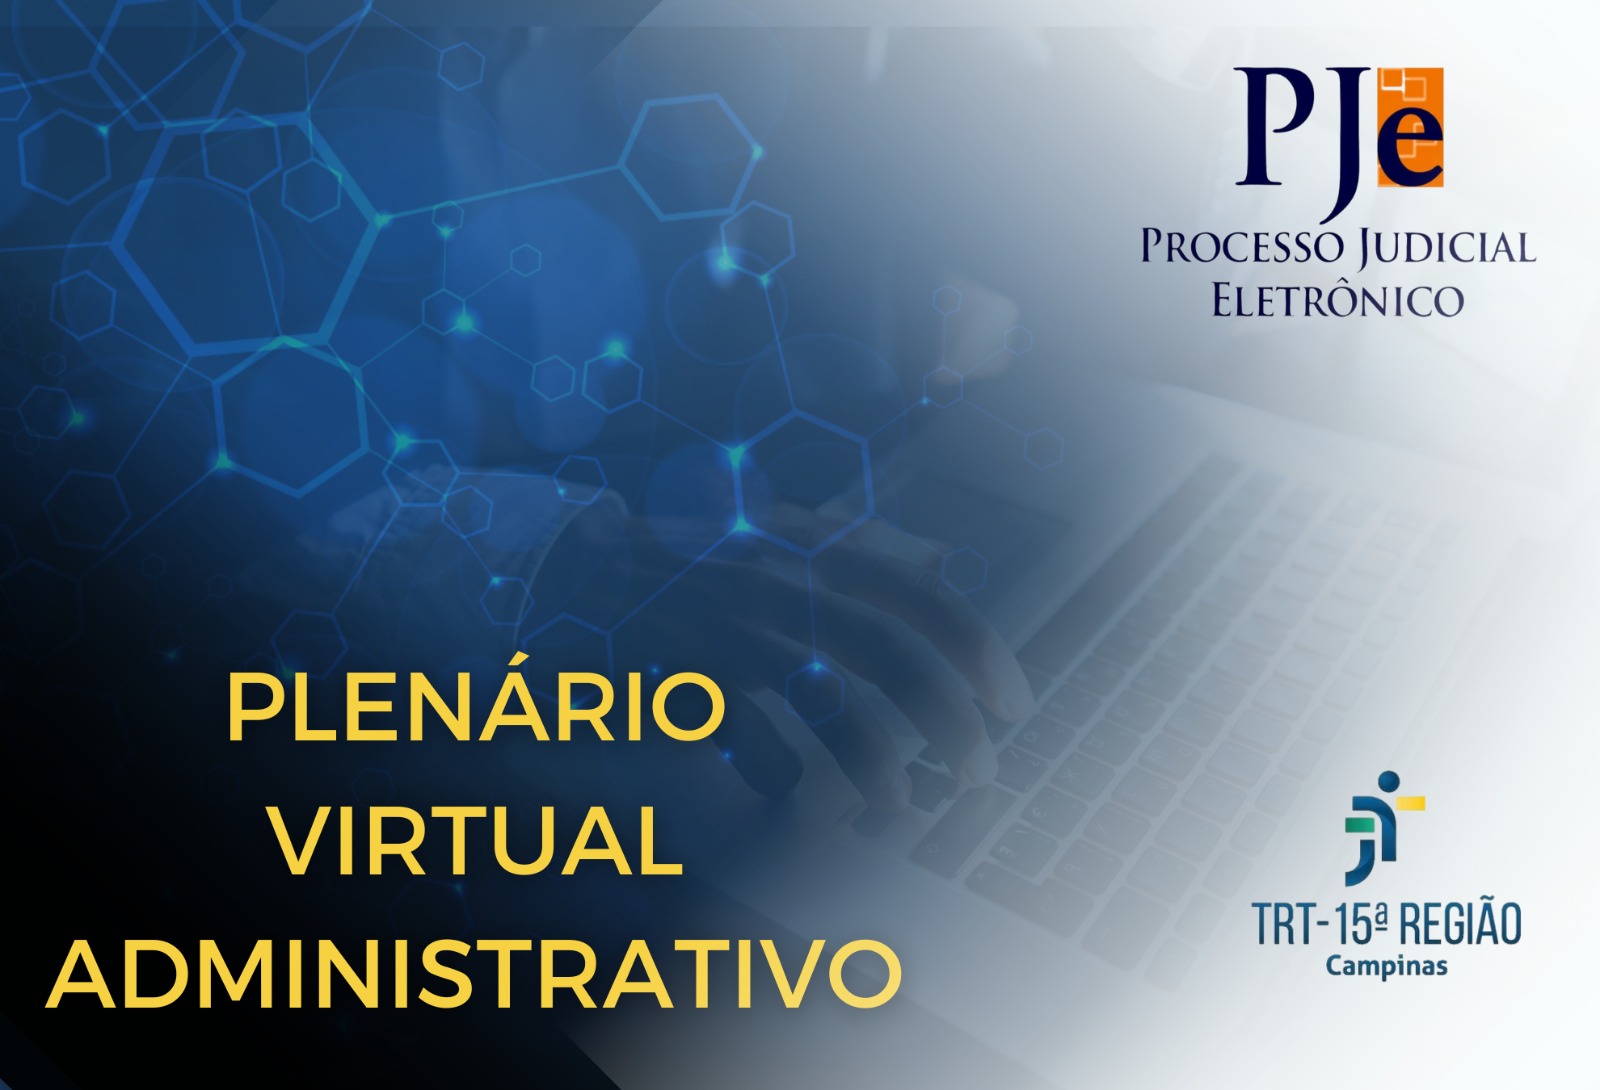 TRT-15 utiliza de forma experimental o Plenário Virtual Administrativo no PJe